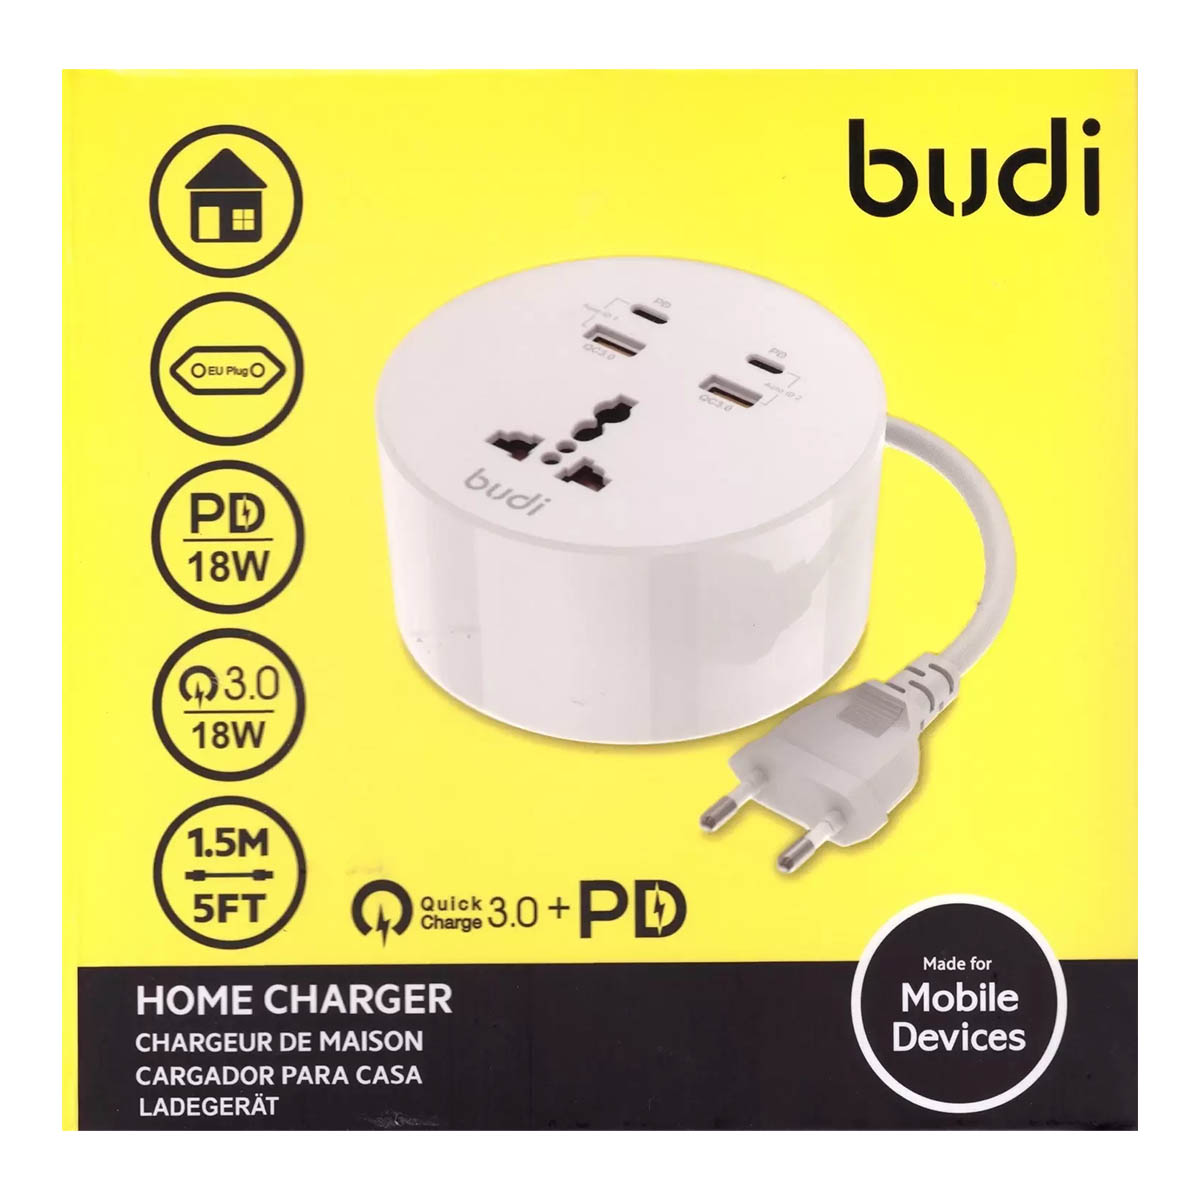 Сетевой удлинитель BUDI M8J308RE, 2 USB (QC 3.0), Type-C (PD) длина 1.5 м, 36 Вт, цвет белый